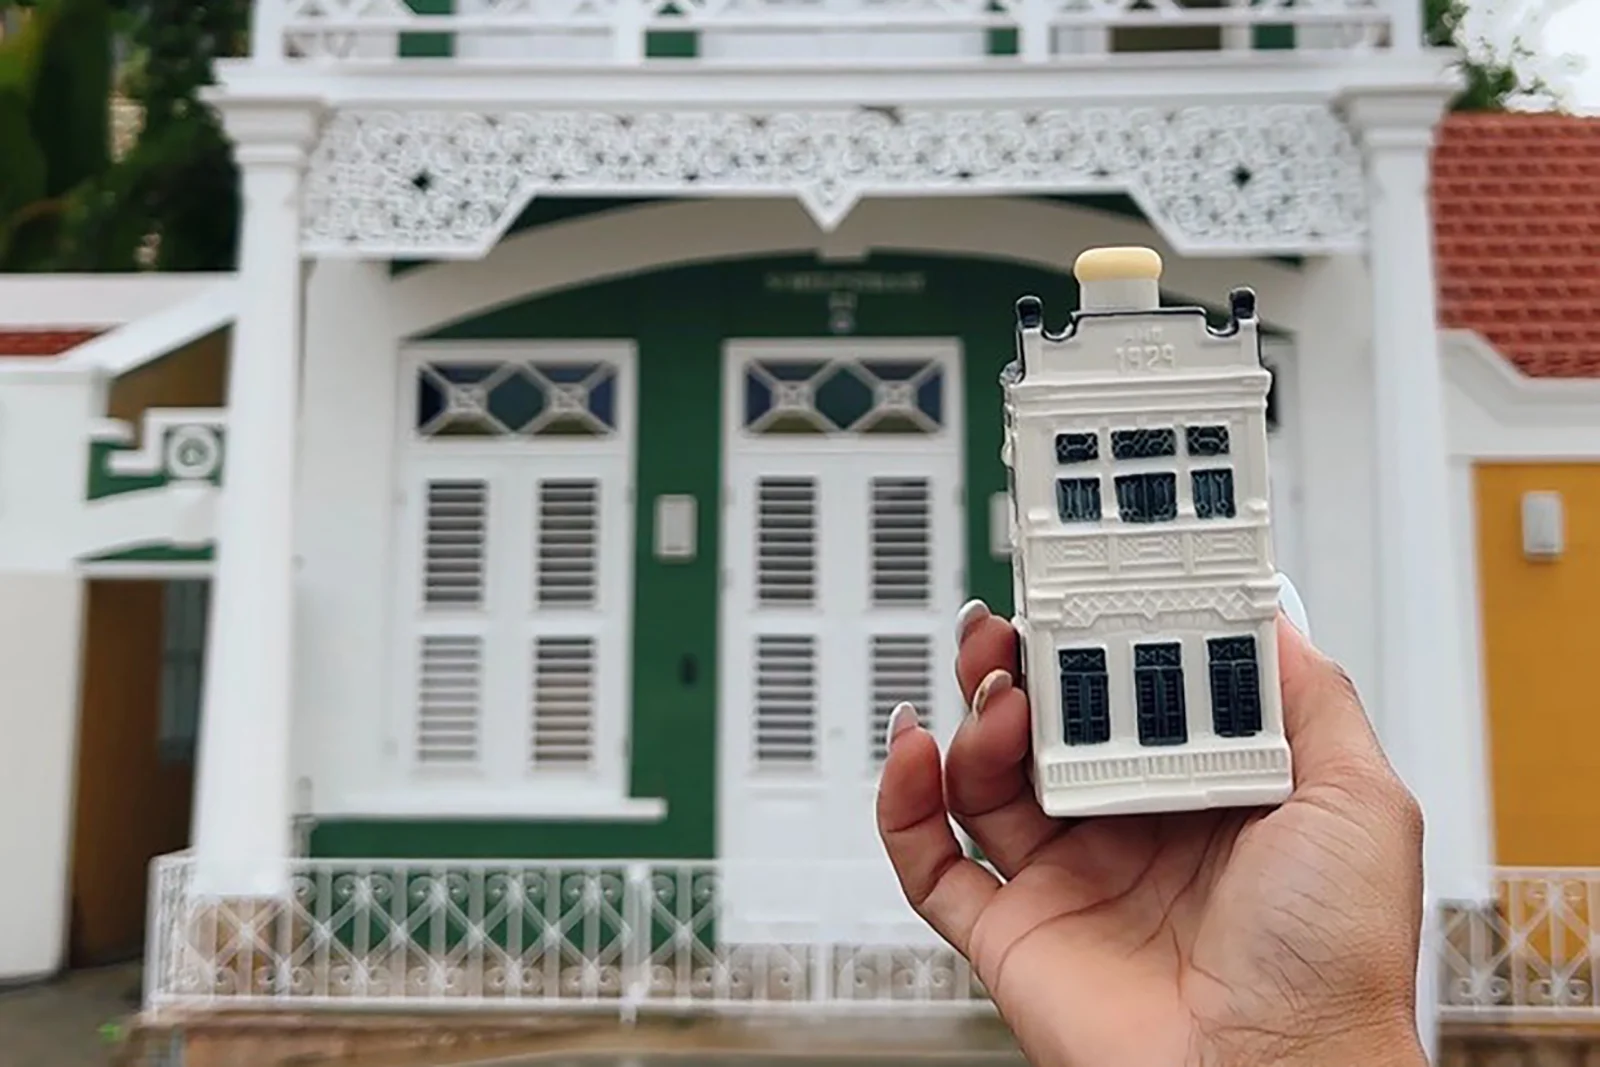 KLM wählte das Ecury-Haus auf Aruba als Basis für sein neues Delfter Porzellan-Miniaturhaus Nr. 103